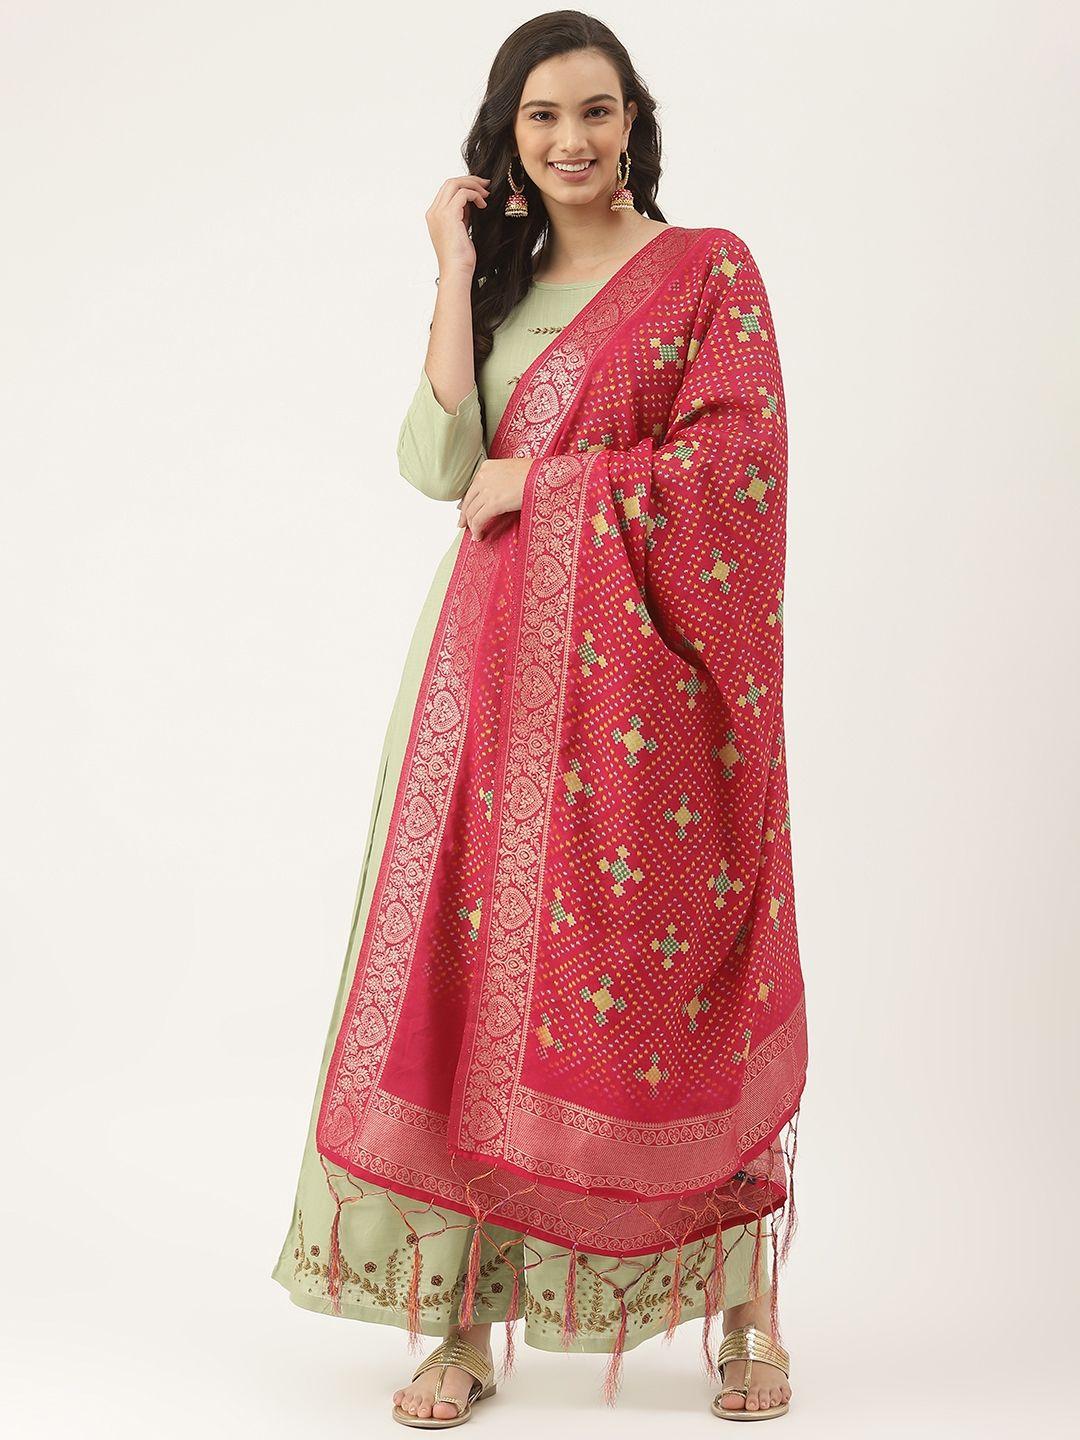 vaaba-pink-ethnic-motifs-printed-bandhani-dupatta-with-zari-details